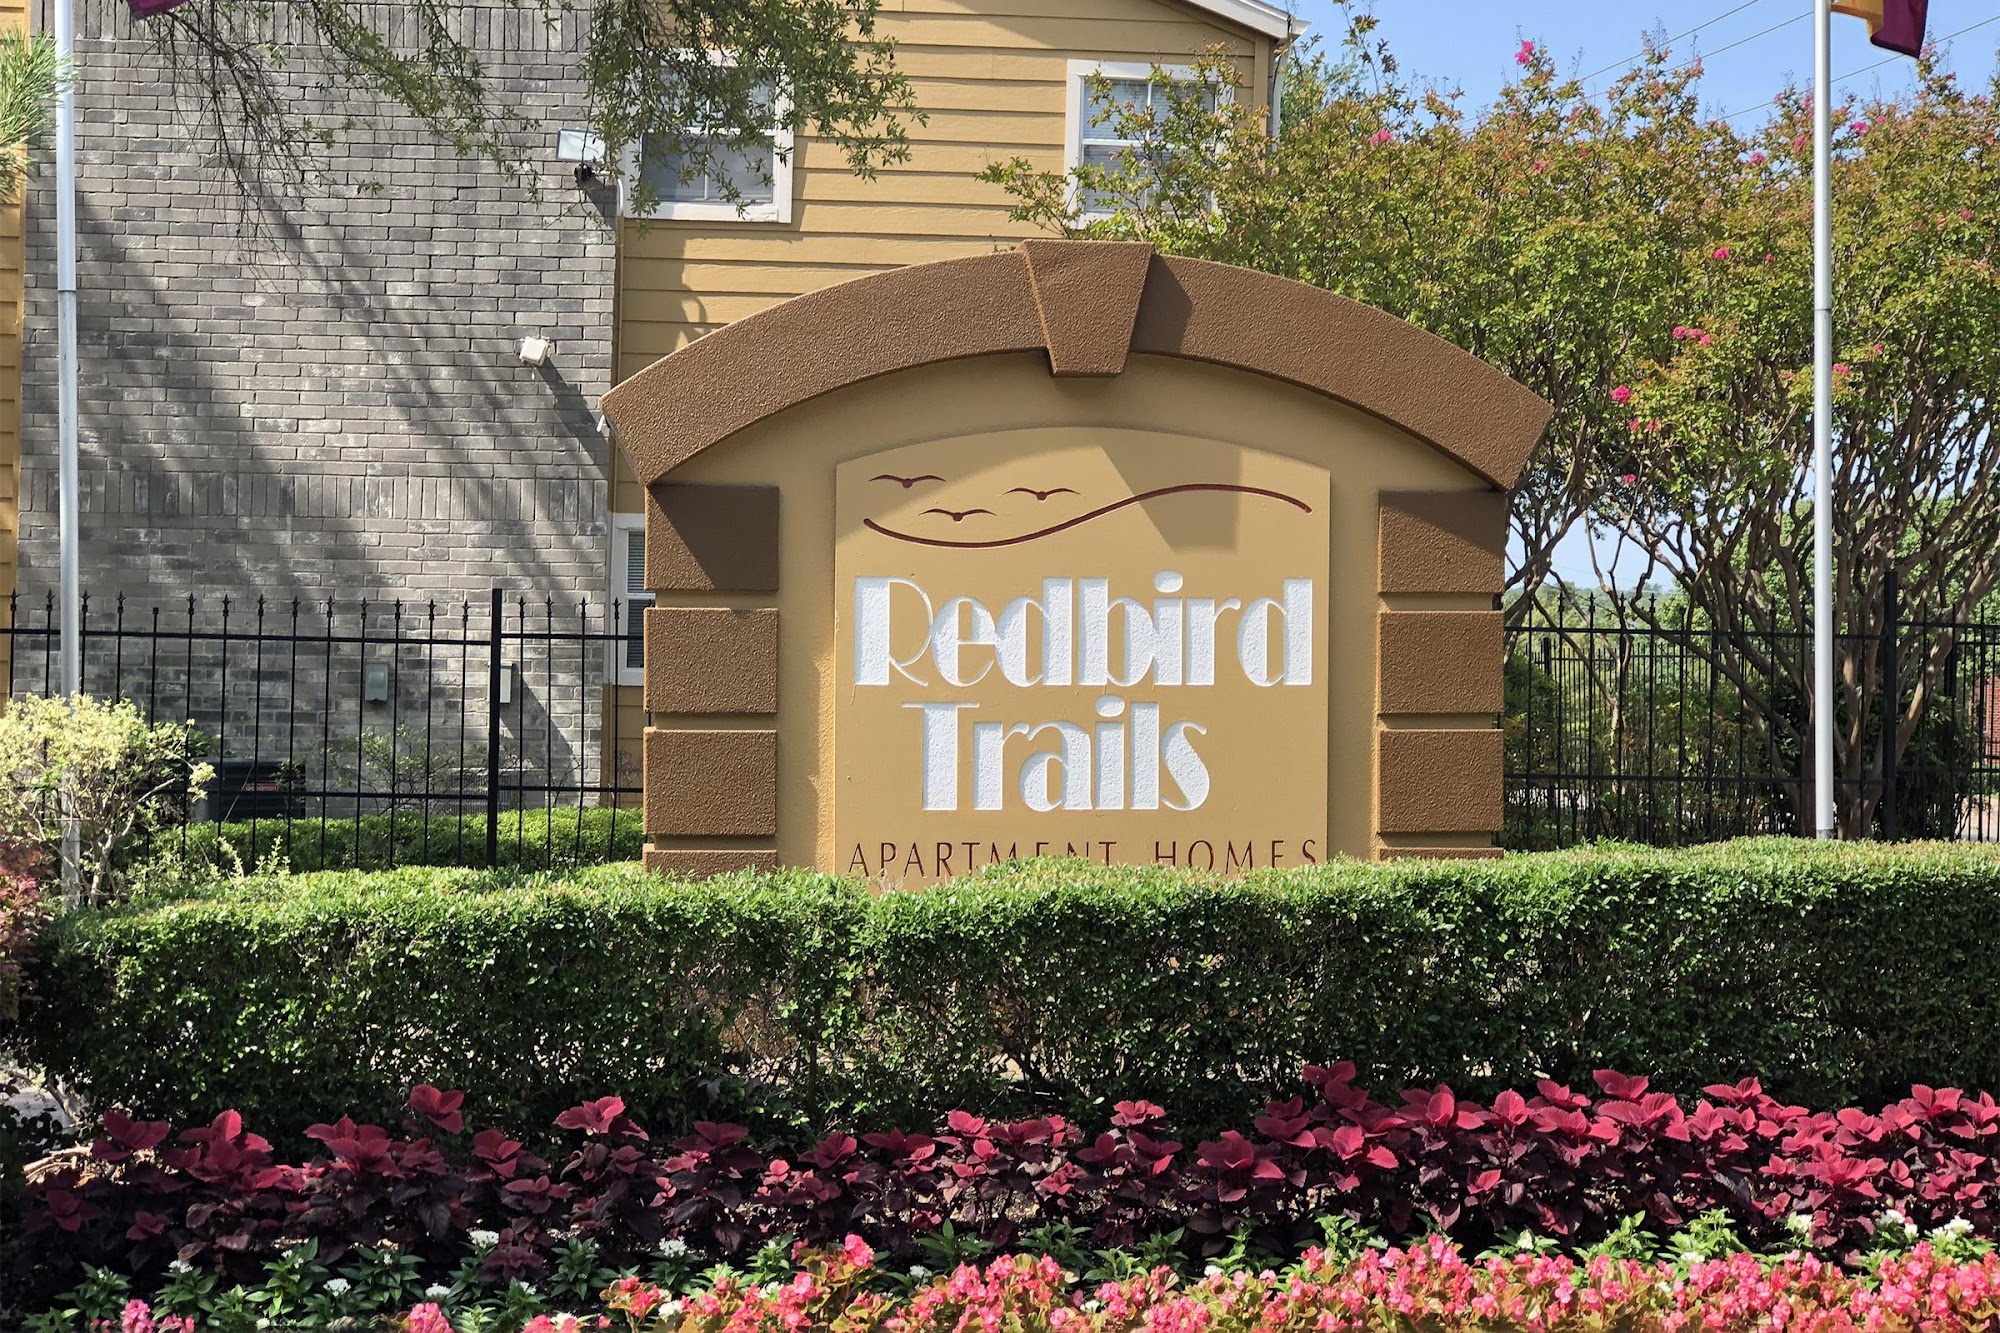 Redbird Trails Apartments